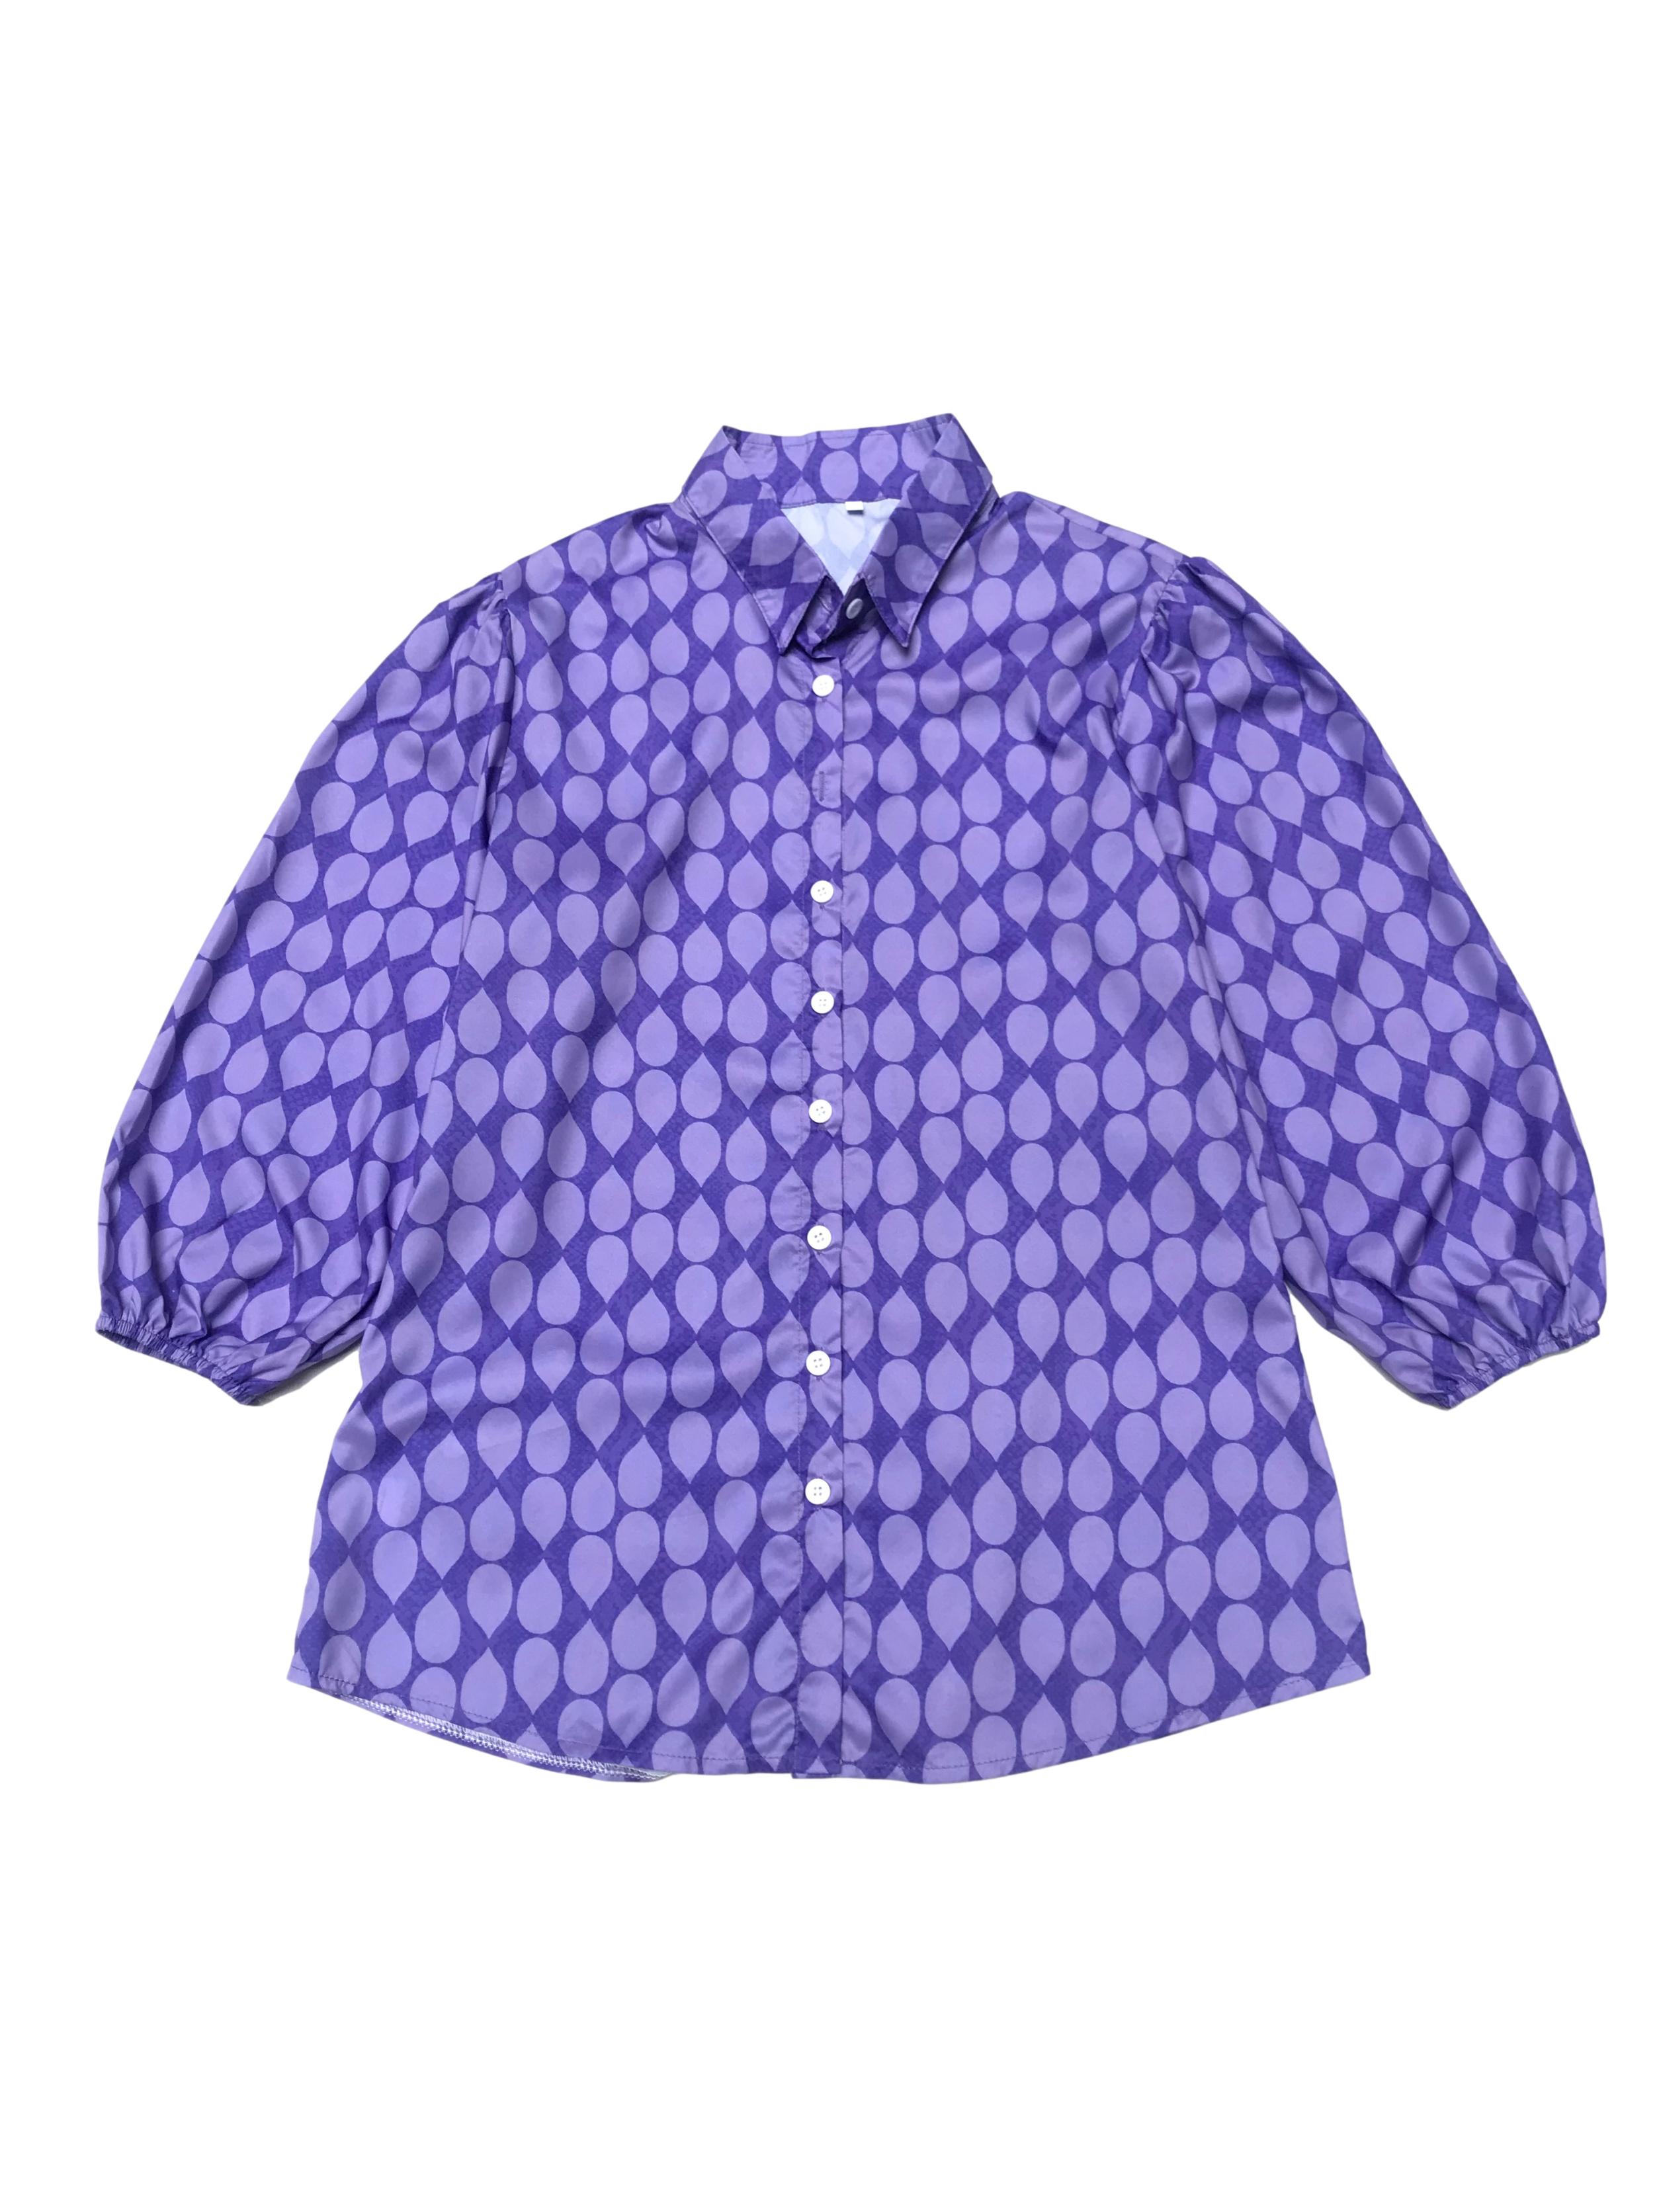 Blusa morada con pétalos lilas, mangas 3/4 abullonadas con elástico en puño